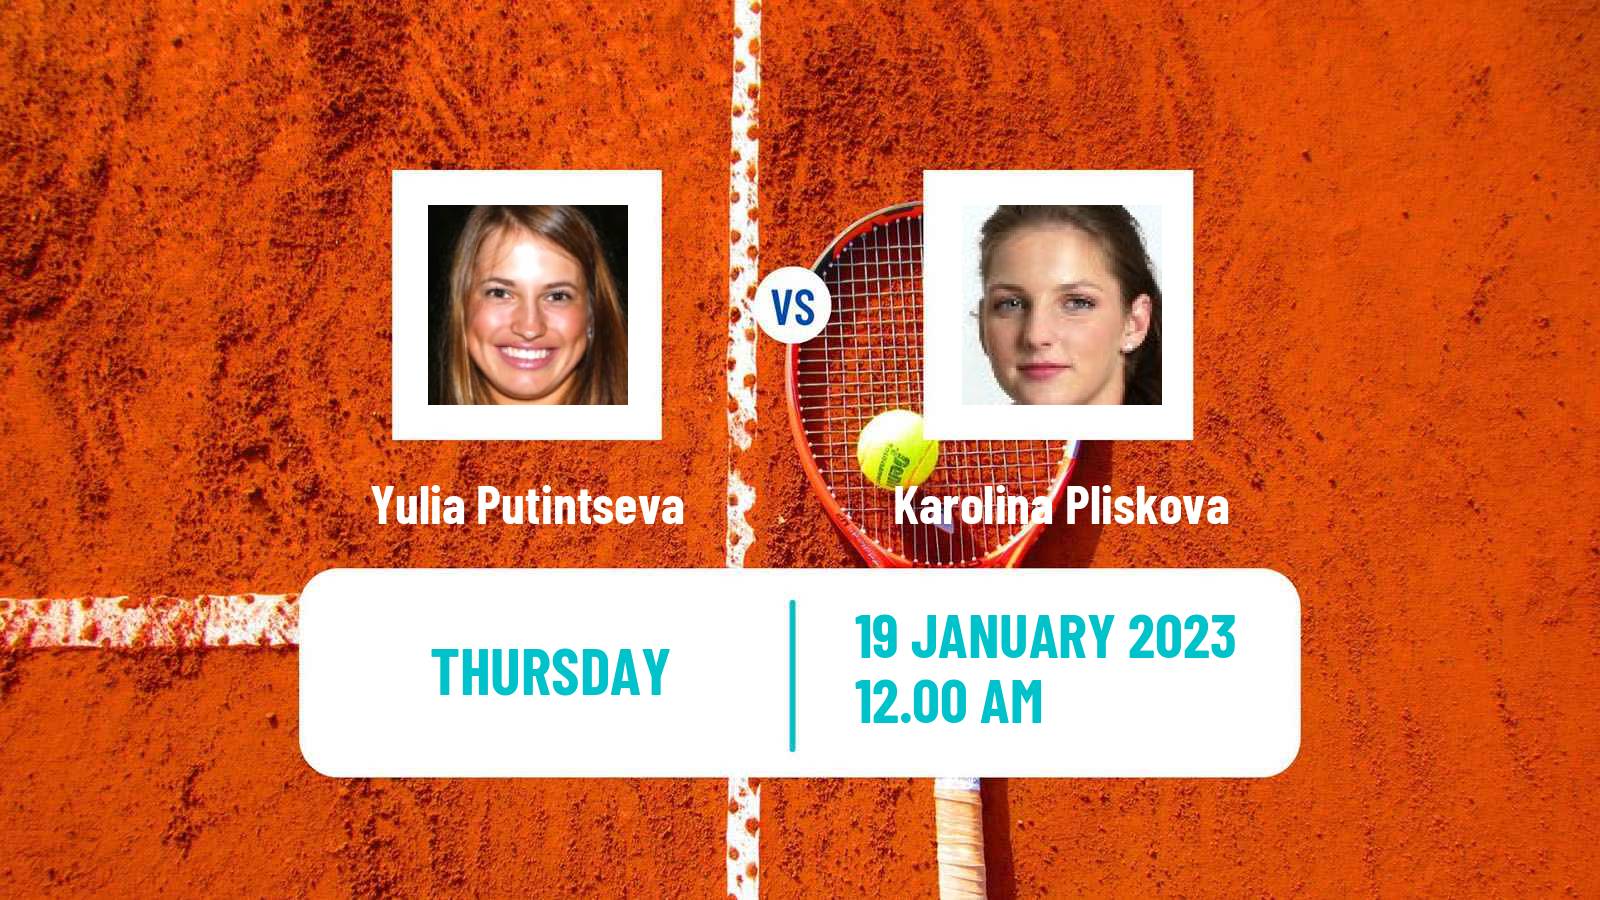 Tennis WTA Australian Open Yulia Putintseva - Karolina Pliskova